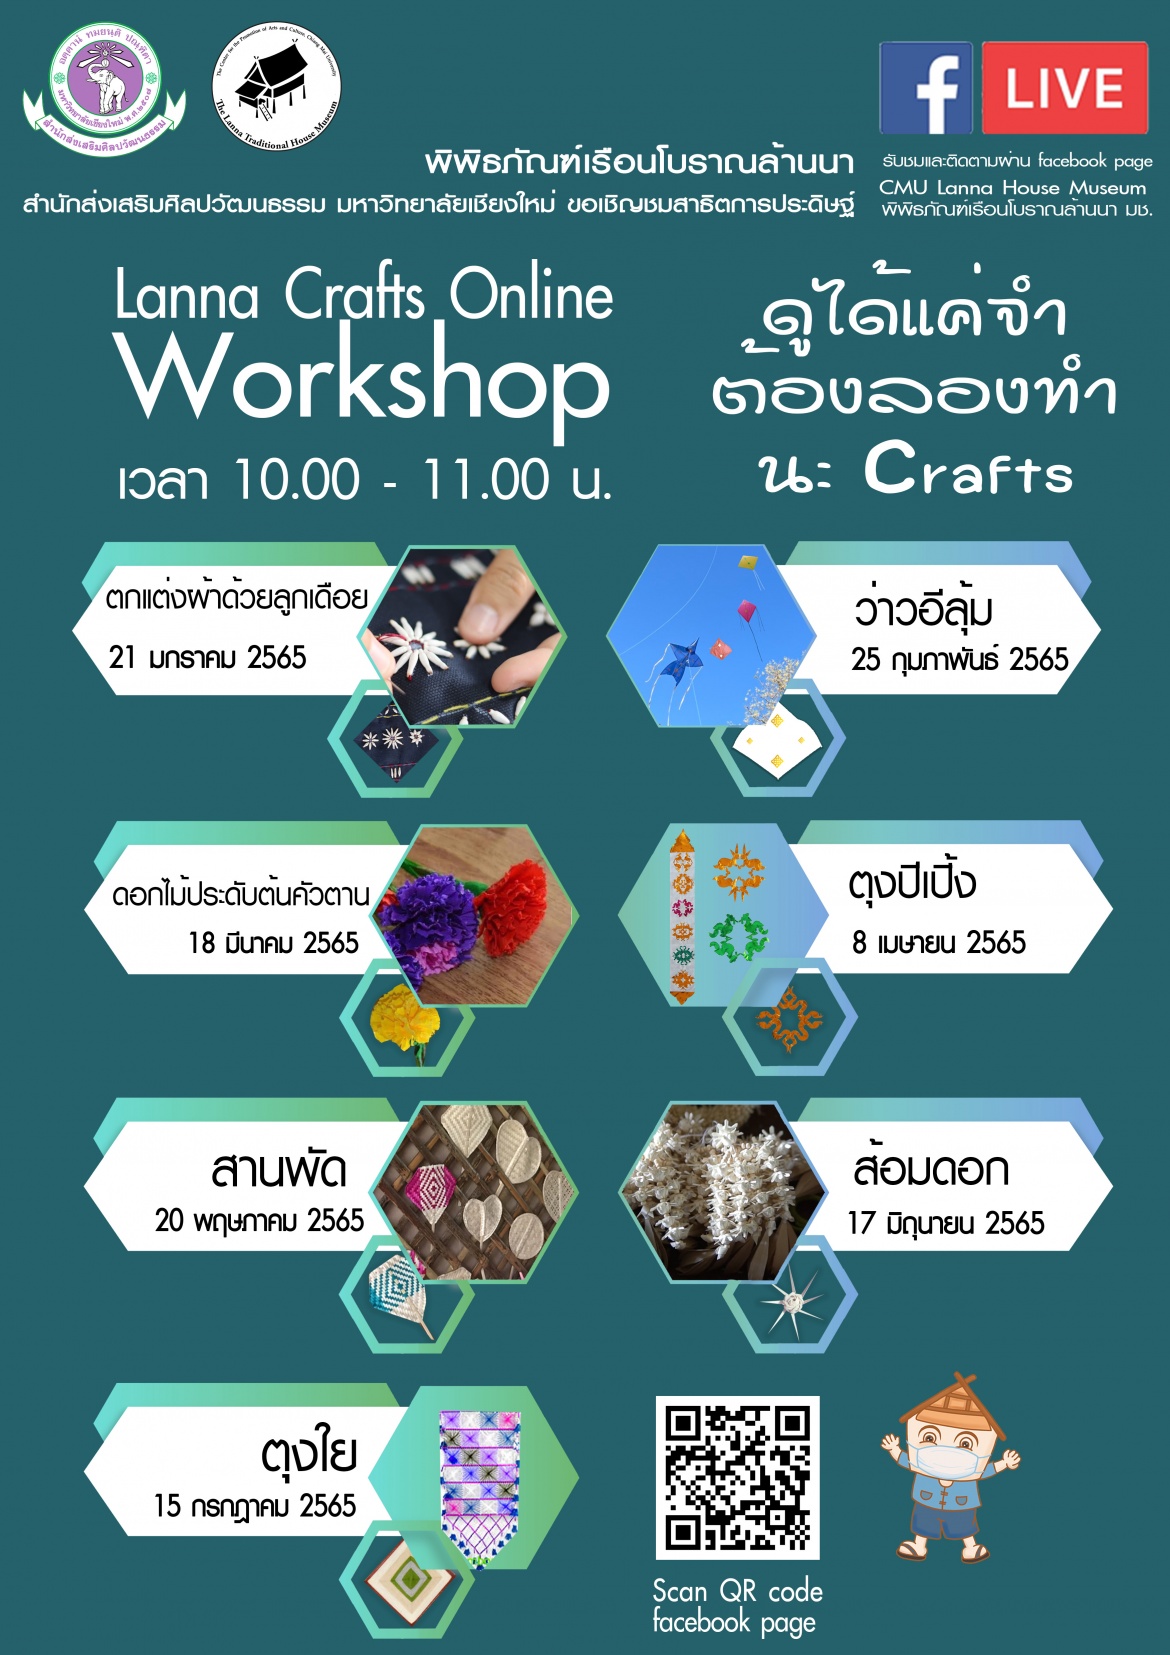 ขอเชิญชมสาธิตการประดิษฐ์ Lanna Crafts Online Workshop